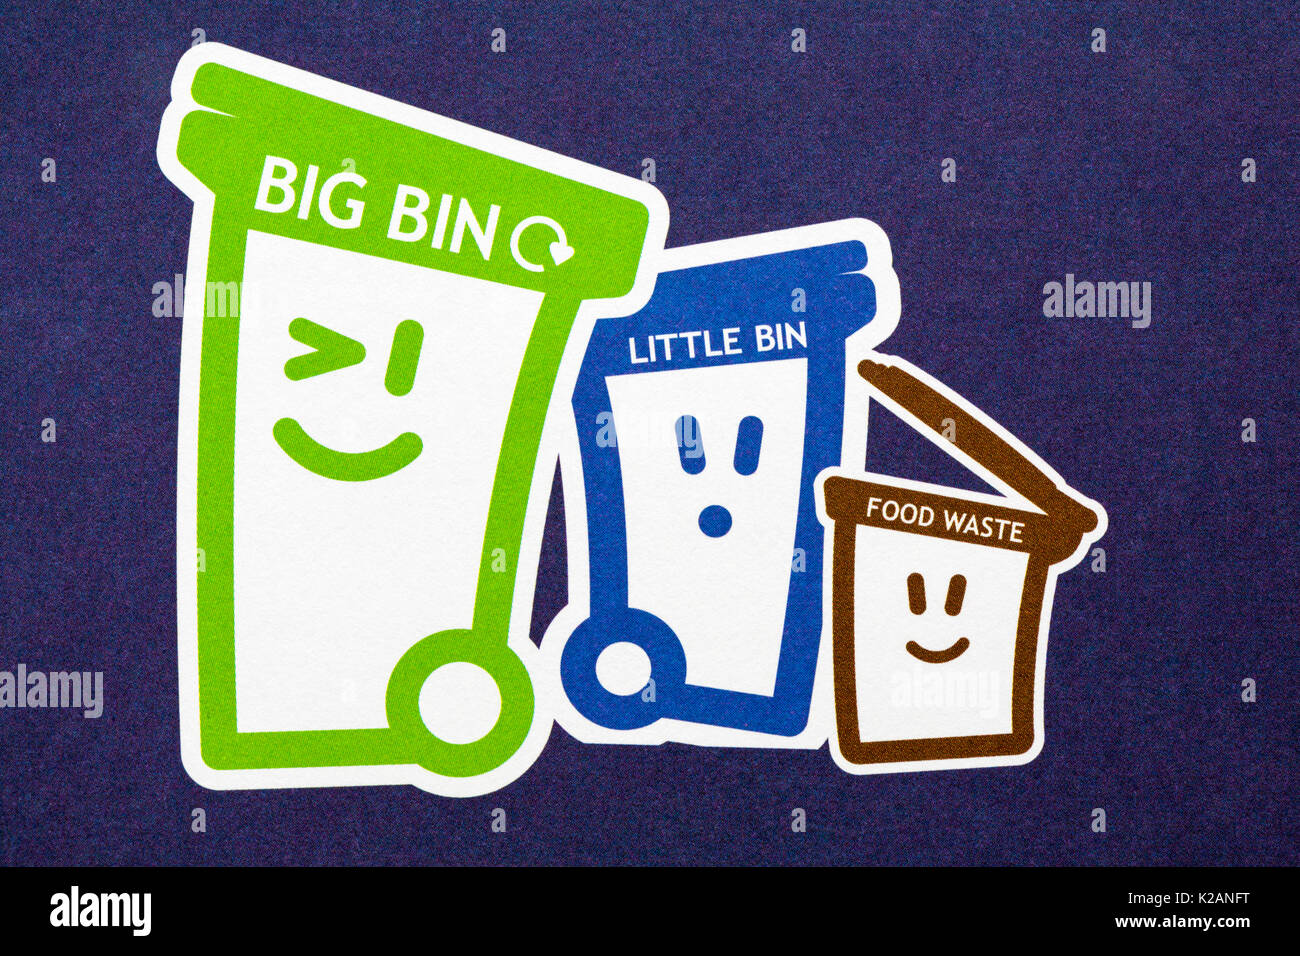 Détail sur le recyclage de ce dépliant présente Big Ben, peu de déchets alimentaires et bin bin Banque D'Images